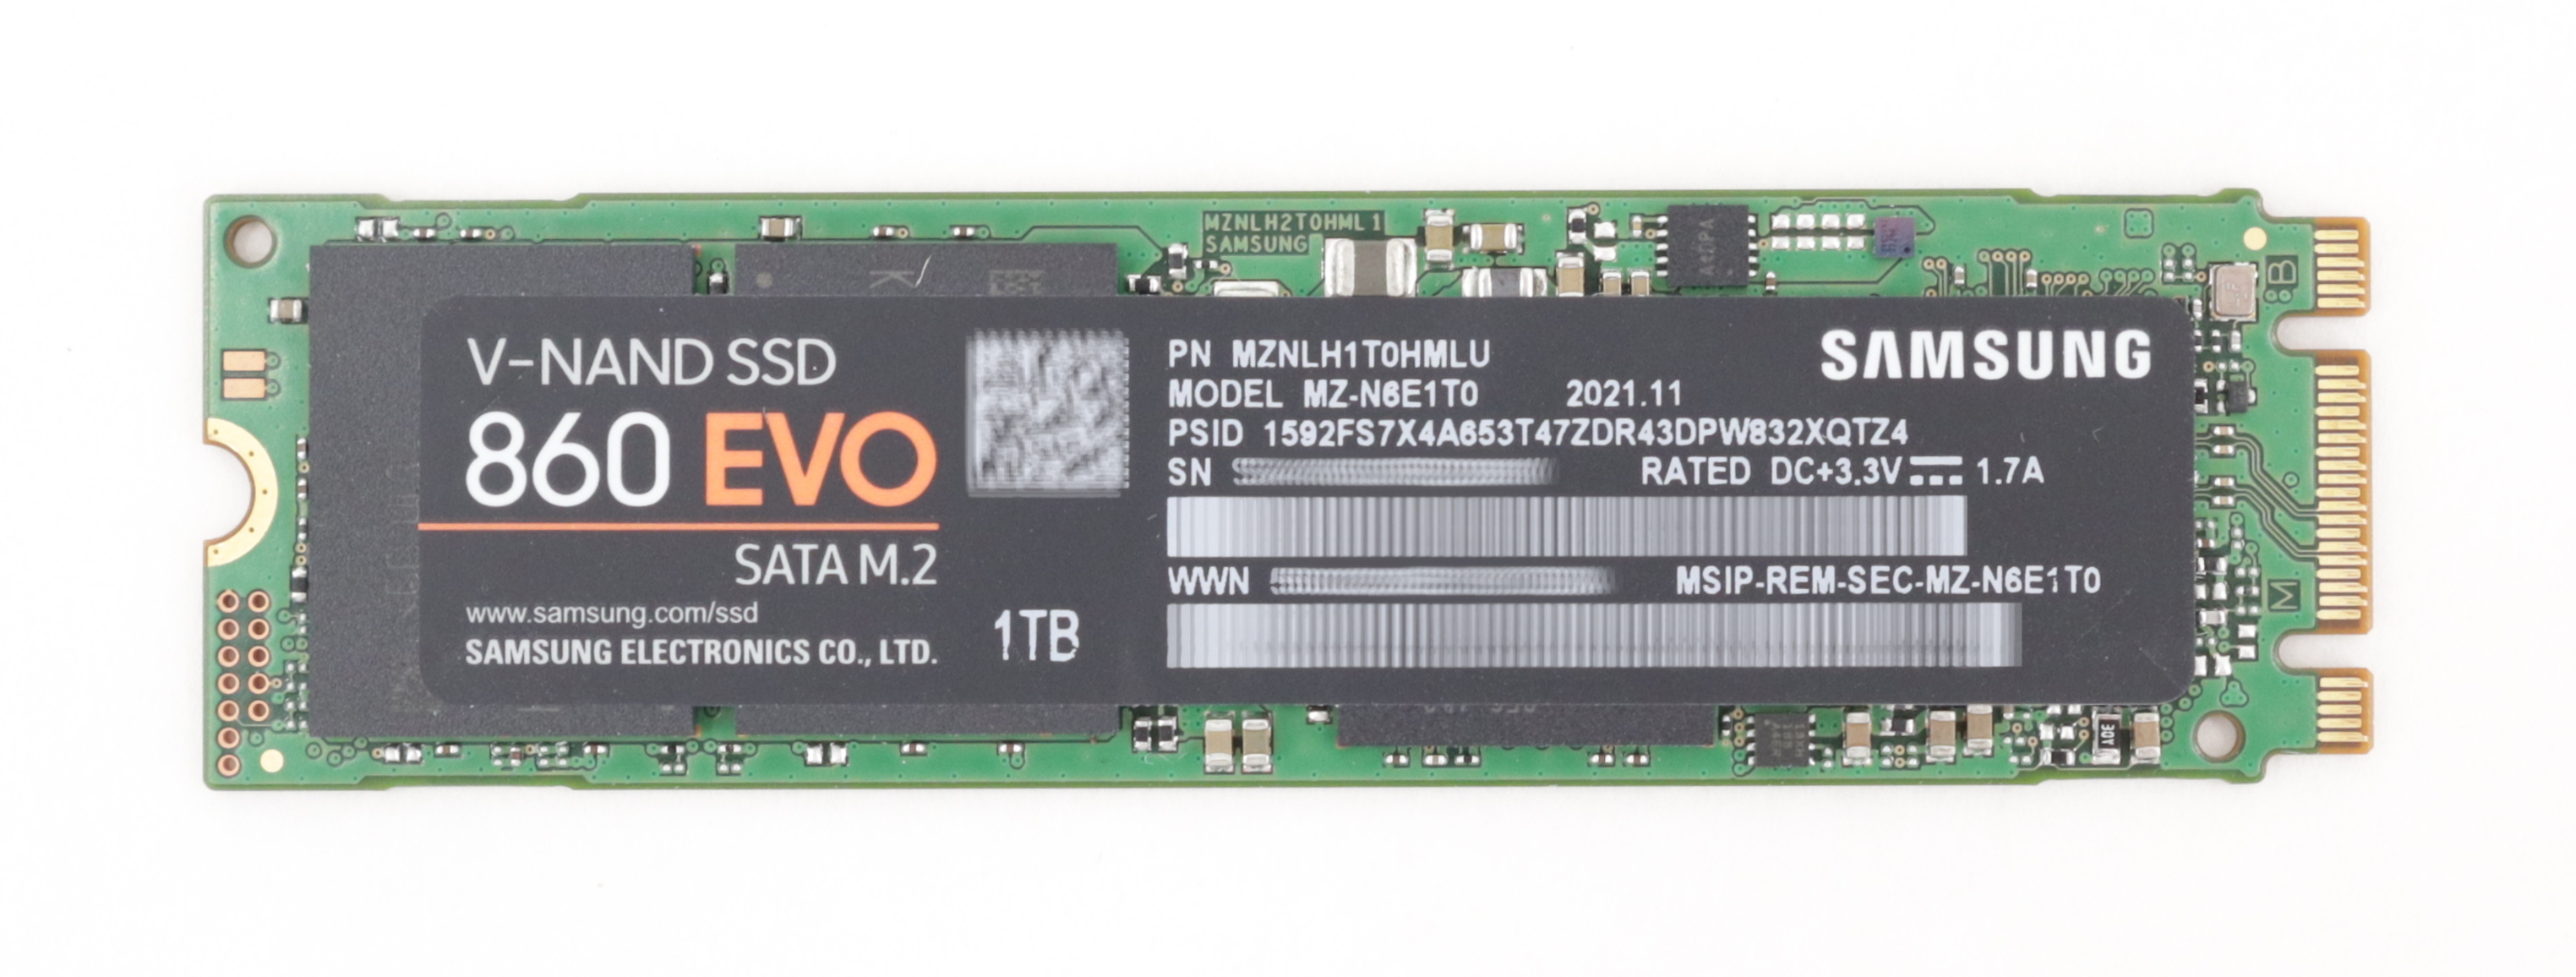 Samsung 1TB MZ-N6E1T0 V-Nand SSD 860 EVO SATA M.2 MZNLH1T0HMLU